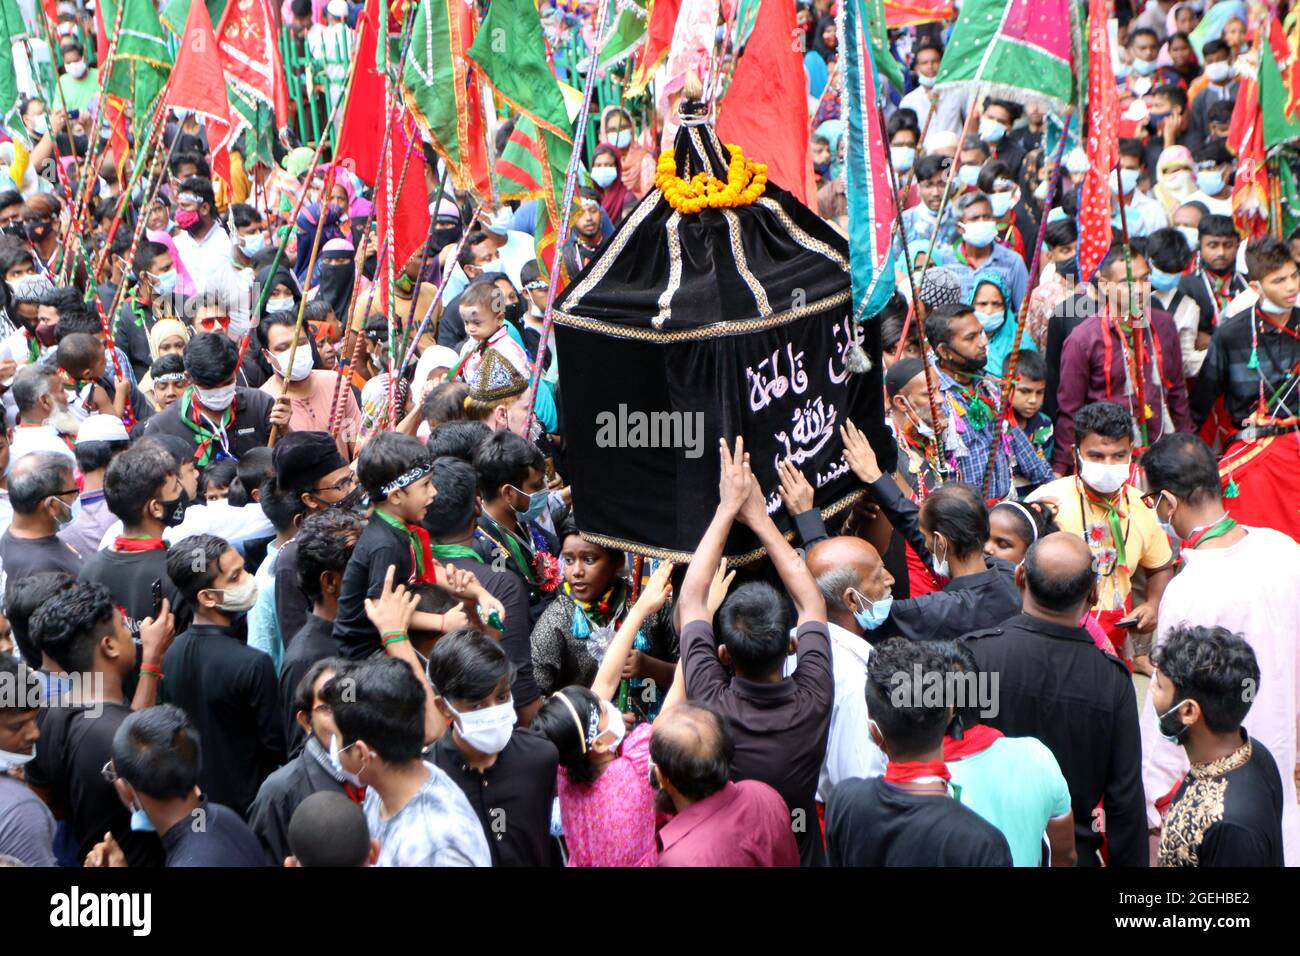 Non exclusif: DHAKA, BANGLADESH - AOÛT 20: Shias faire la parade coutumière de Tazia, les participants, prévoit la parade et commence leur reconnaissance Banque D'Images